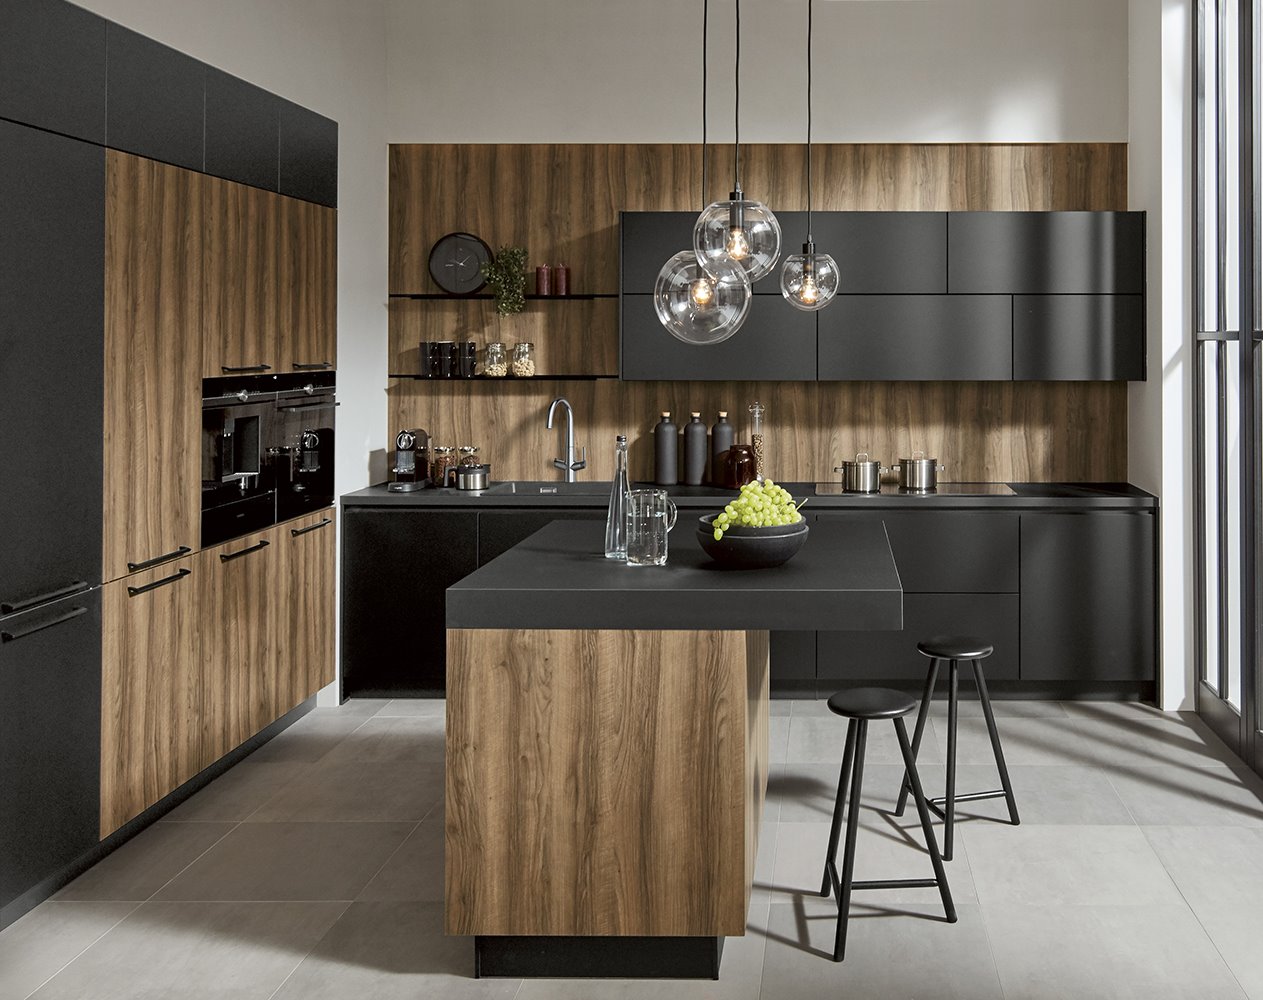 La combinación de materiales y texturas es tendencia en la cocina. Esta propuesta de Roca combina la laca ultramate con laminados de madera en los frentes.